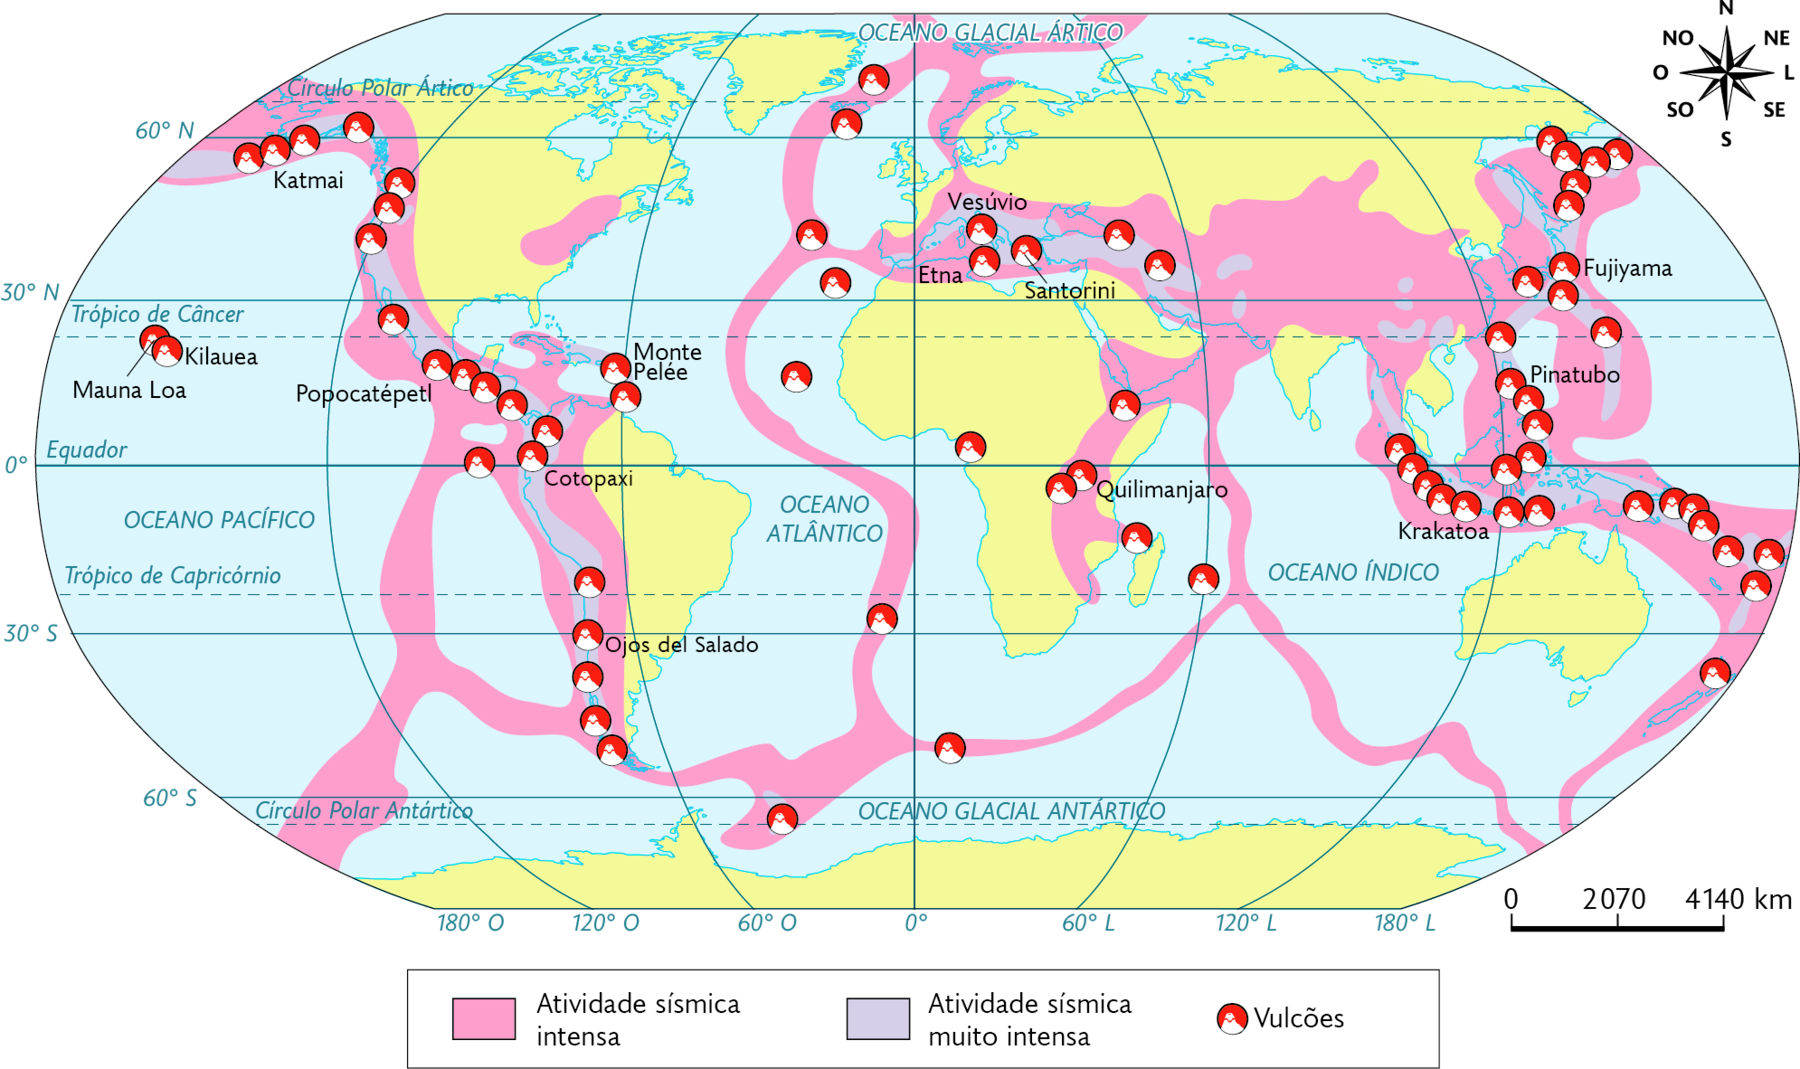 Mapa-múndi. Vulcões e terremotos (2019). 
Atividade sísmica intensa: linha sinuosa na vertical na região central, sul da Europa e grande porção no sul da Ásia e norte da Oceania; faixas estreitas no Oceano Índico e no Oceano Glacial Antártico e em toda a costa oeste da América, com Vulcões e Atividade sísmica muito intensa na faixa costeira. 
Atividade sísmica muito intensa também ocorre no sul da Europa e sudoeste, áreas no sul e faixa leste da Ásia e norte da Oceania. Há vulcões em todas as áreas de atividade sísmica em maior quantidade no leste da Ásia e norte da Ásia. No canto superior direito, rosa dos ventos e na parte inferior, a escala: 2070 quilômetros por centímetro.